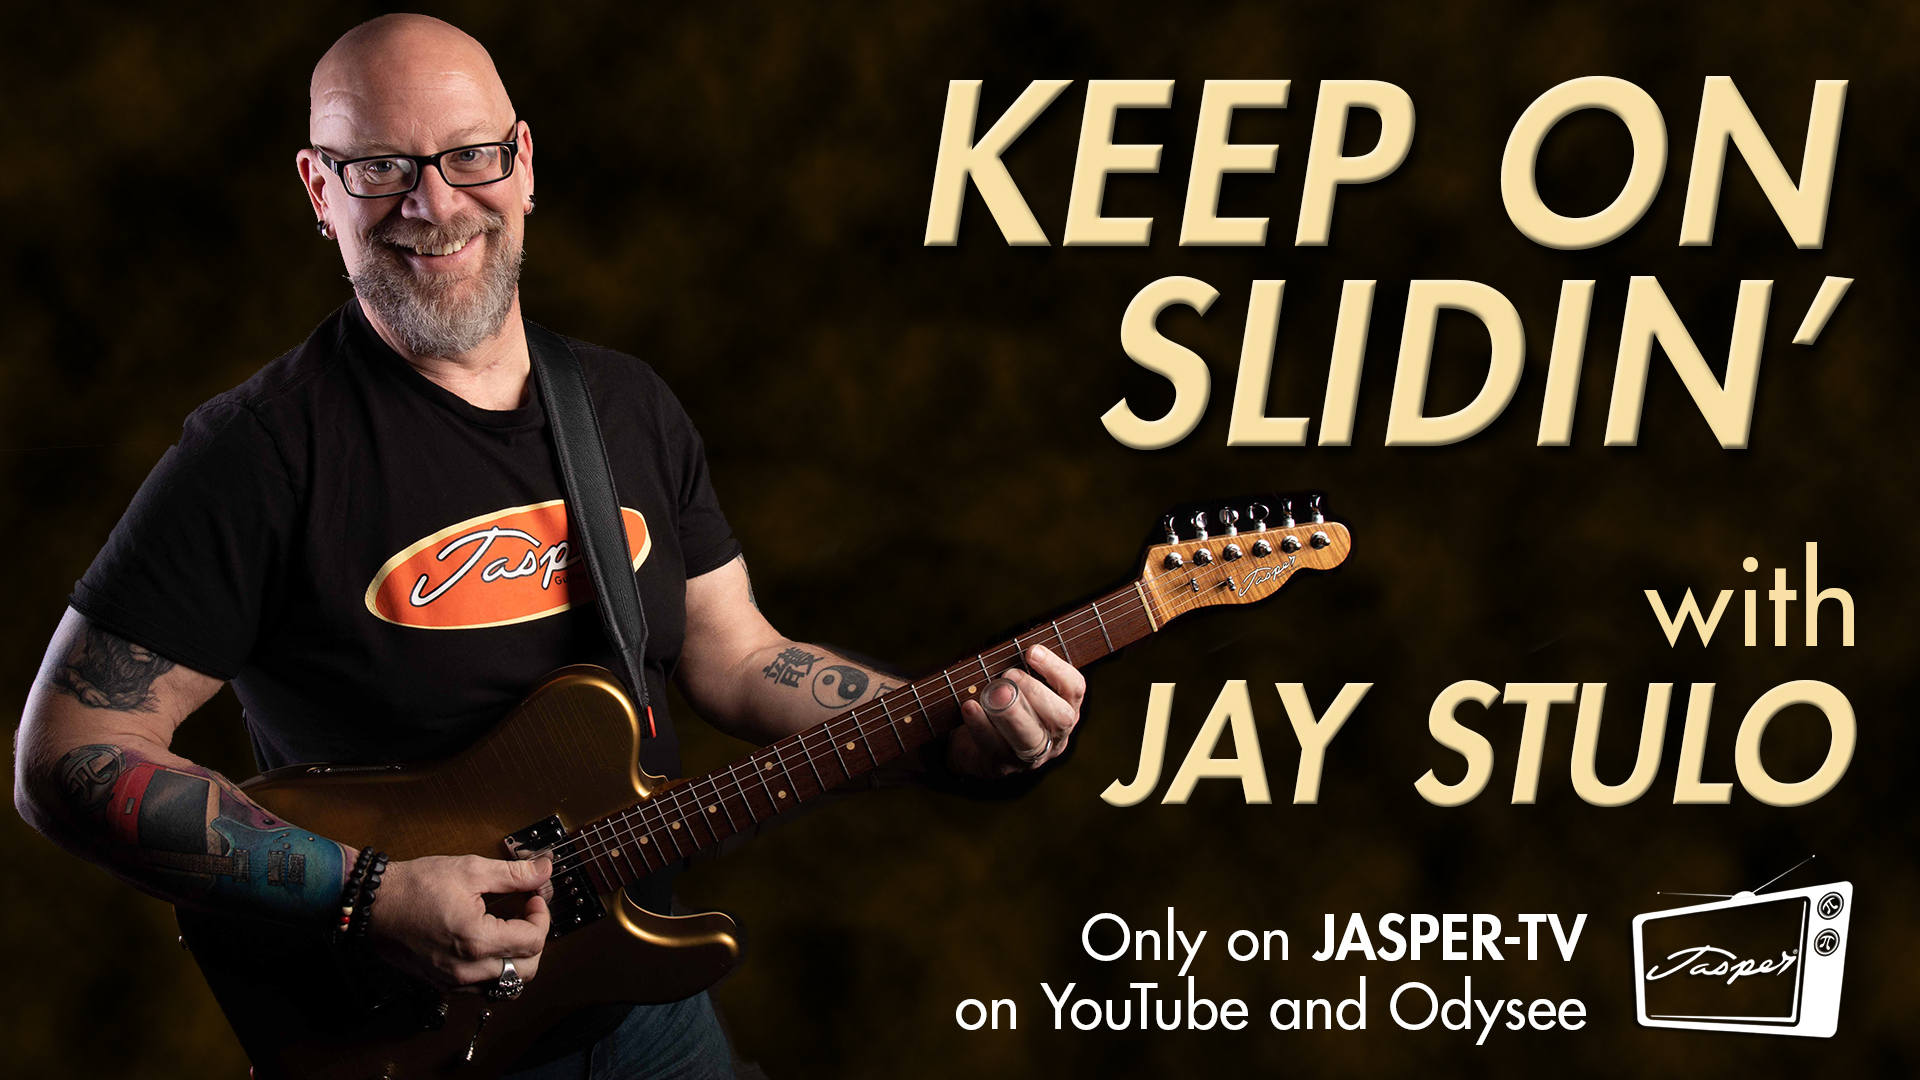 KEEP ON SLIDIN’ with JAY STULO